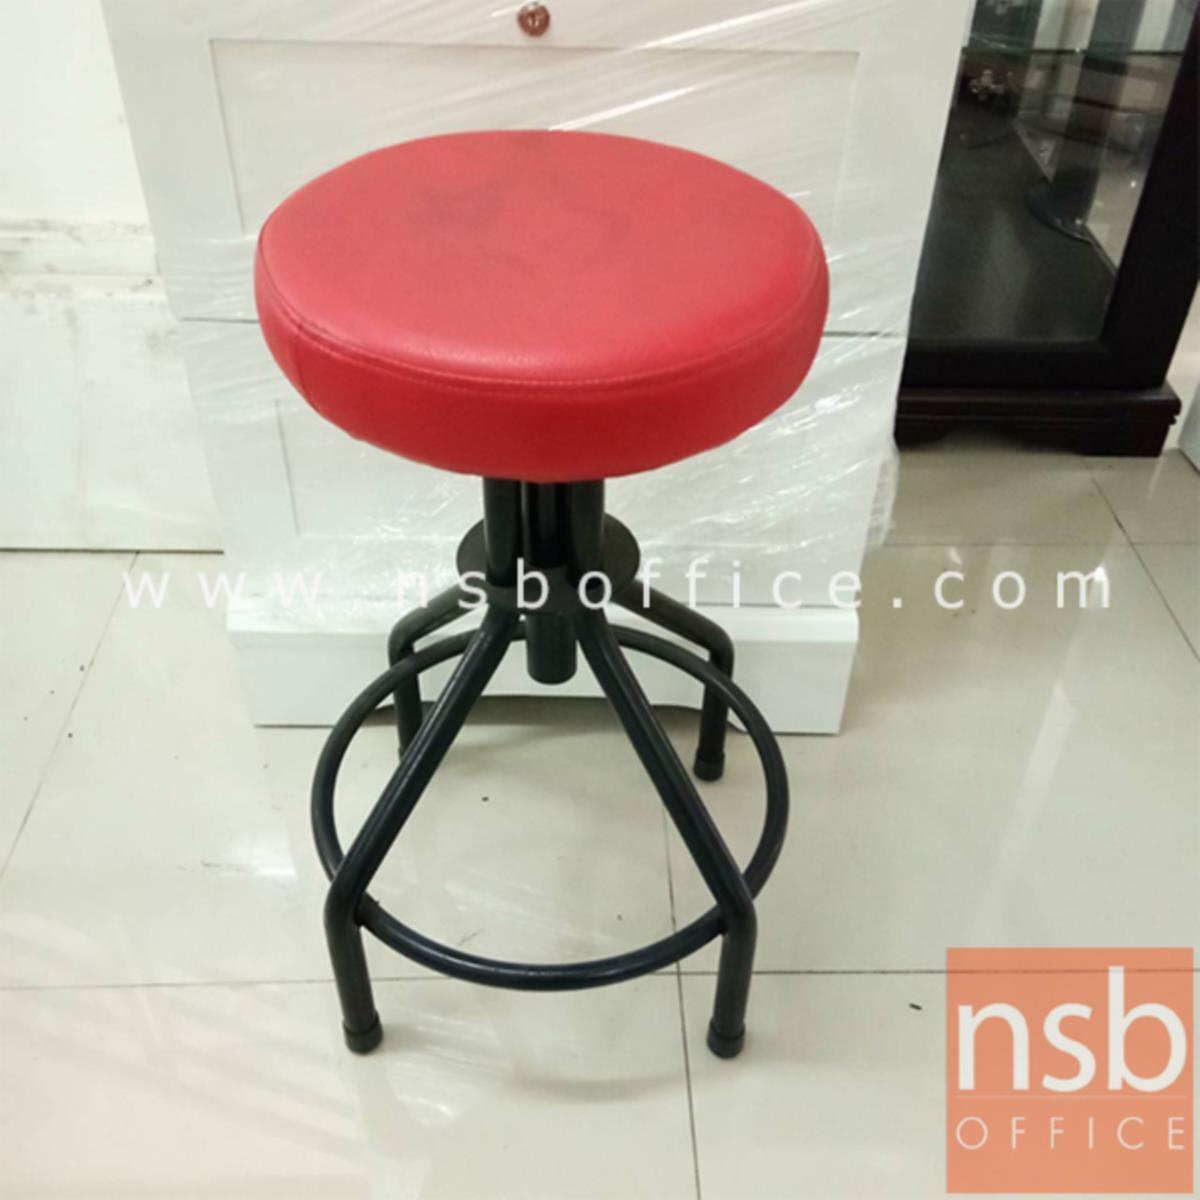 L02A230: เก้าอี้ สีแดง ขาดำ ขนาด32*63*63ซม.   